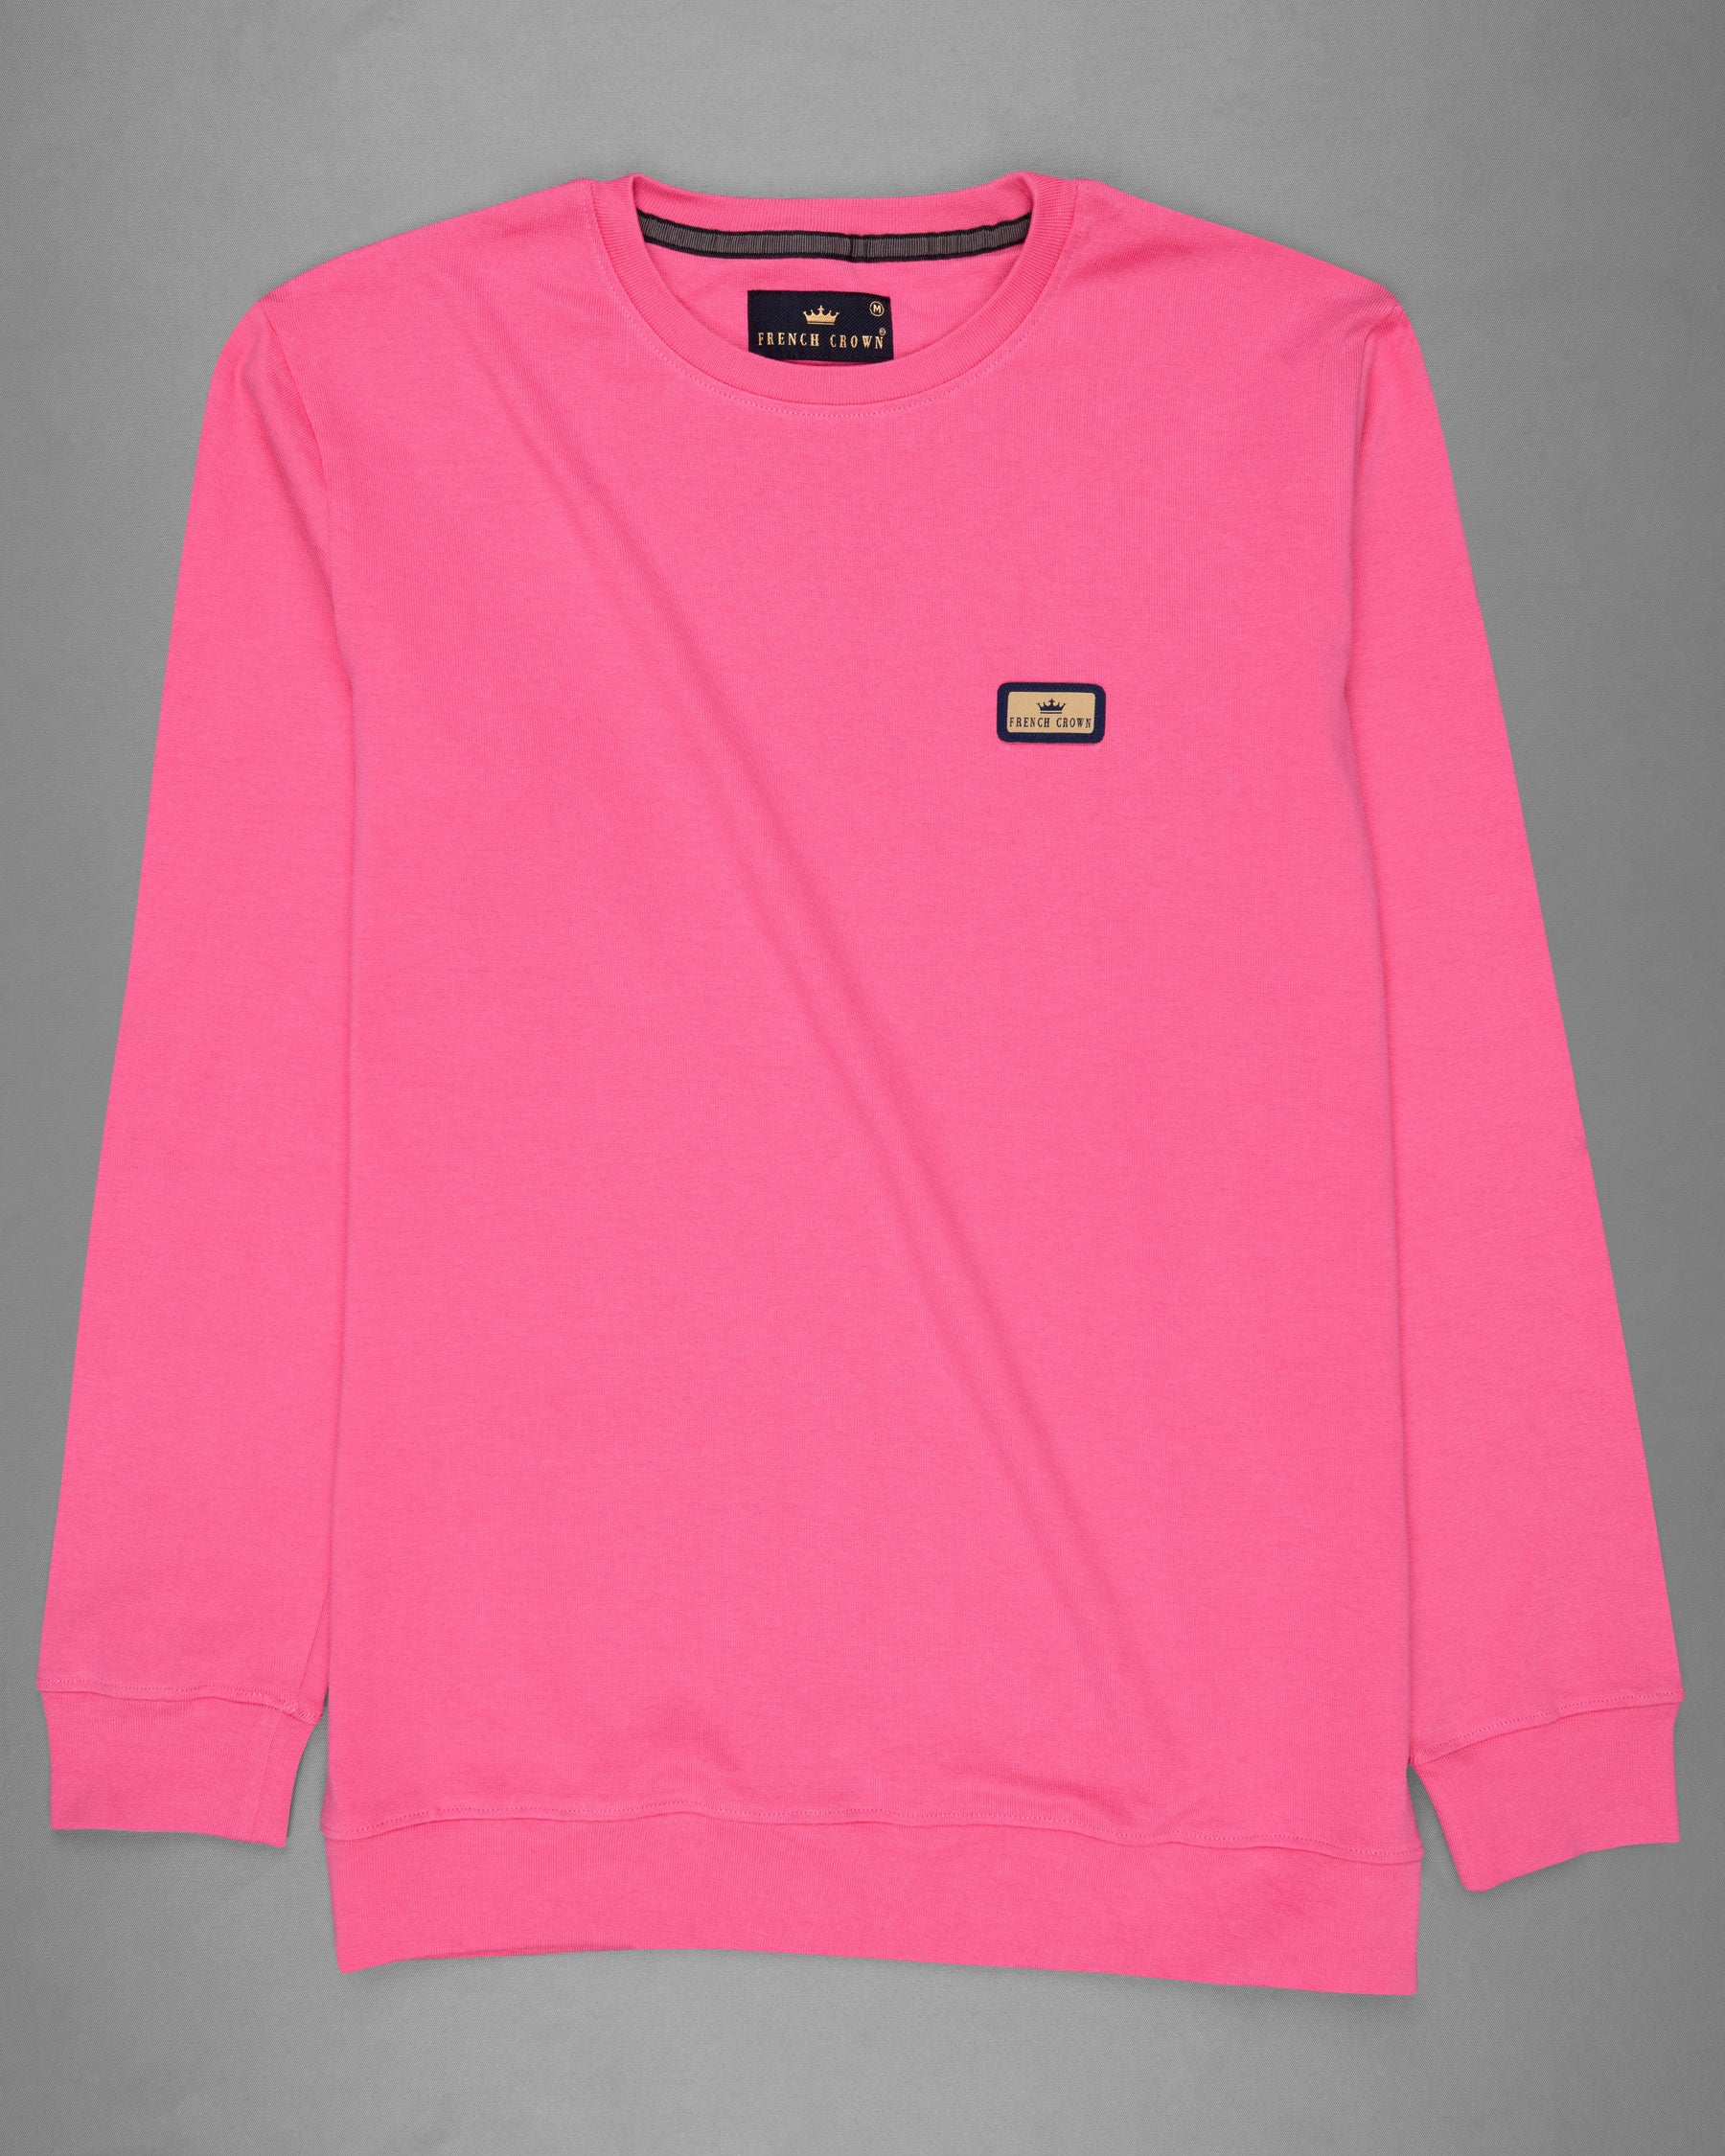 Brick Pink Full Sleeve Premium Cotton Jersey Sweatshirt TS474-S, TS474-M, TS474-L, TS474-XL, TS474-XXL